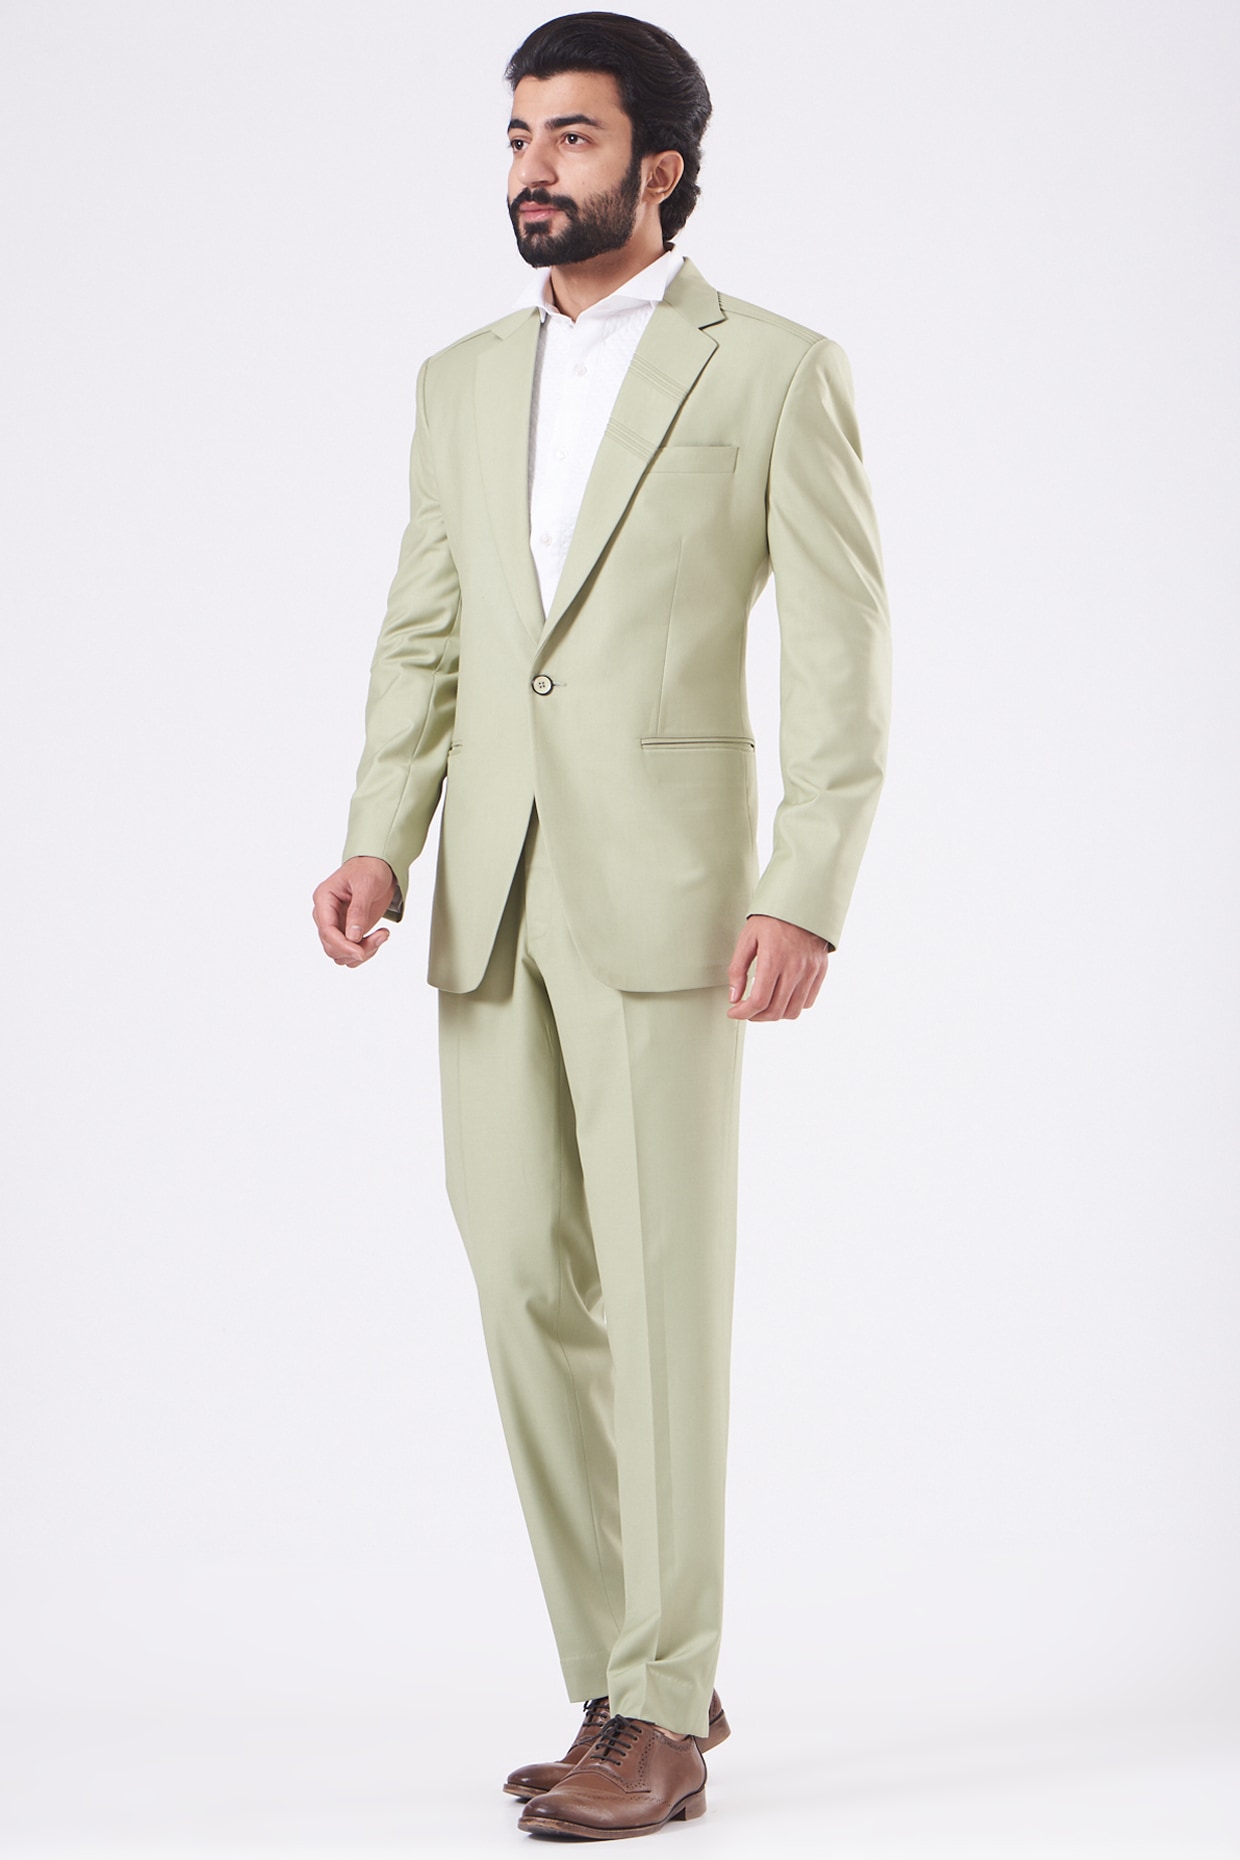 Blazers & Jackets for Men - Designer Fashion Blazers | LOUIS VUITTON ®